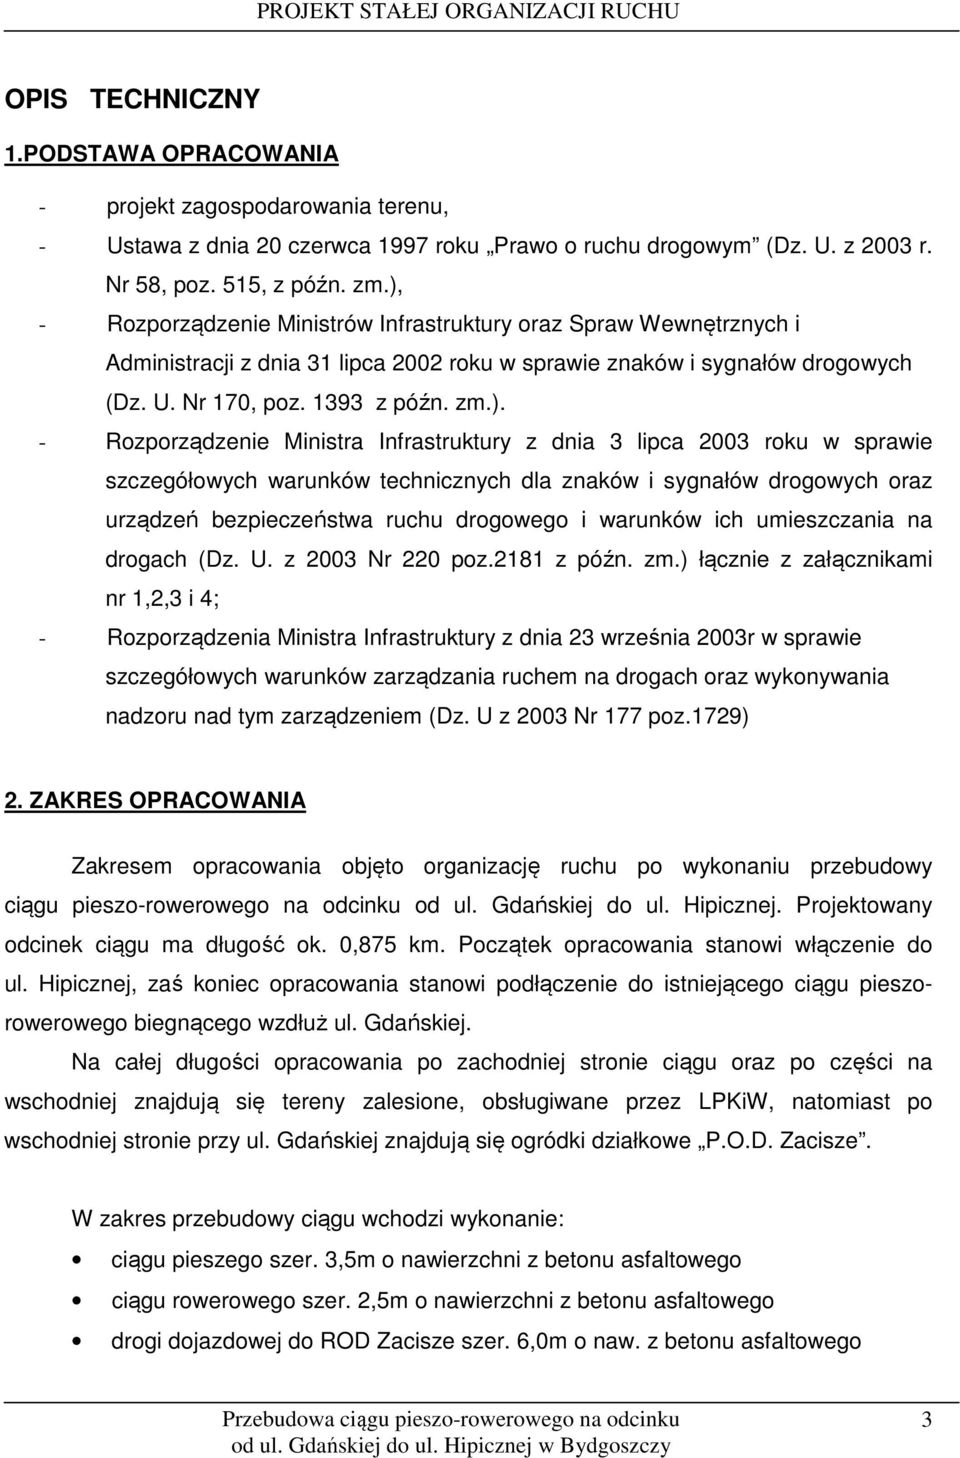 Rozporządzenie Ministra Infrastruktury z dnia 3 lipca 2003 roku w sprawie szczegółowych warunków technicznych dla znaków i sygnałów drogowych oraz urządzeń bezpieczeństwa ruchu drogowego i warunków